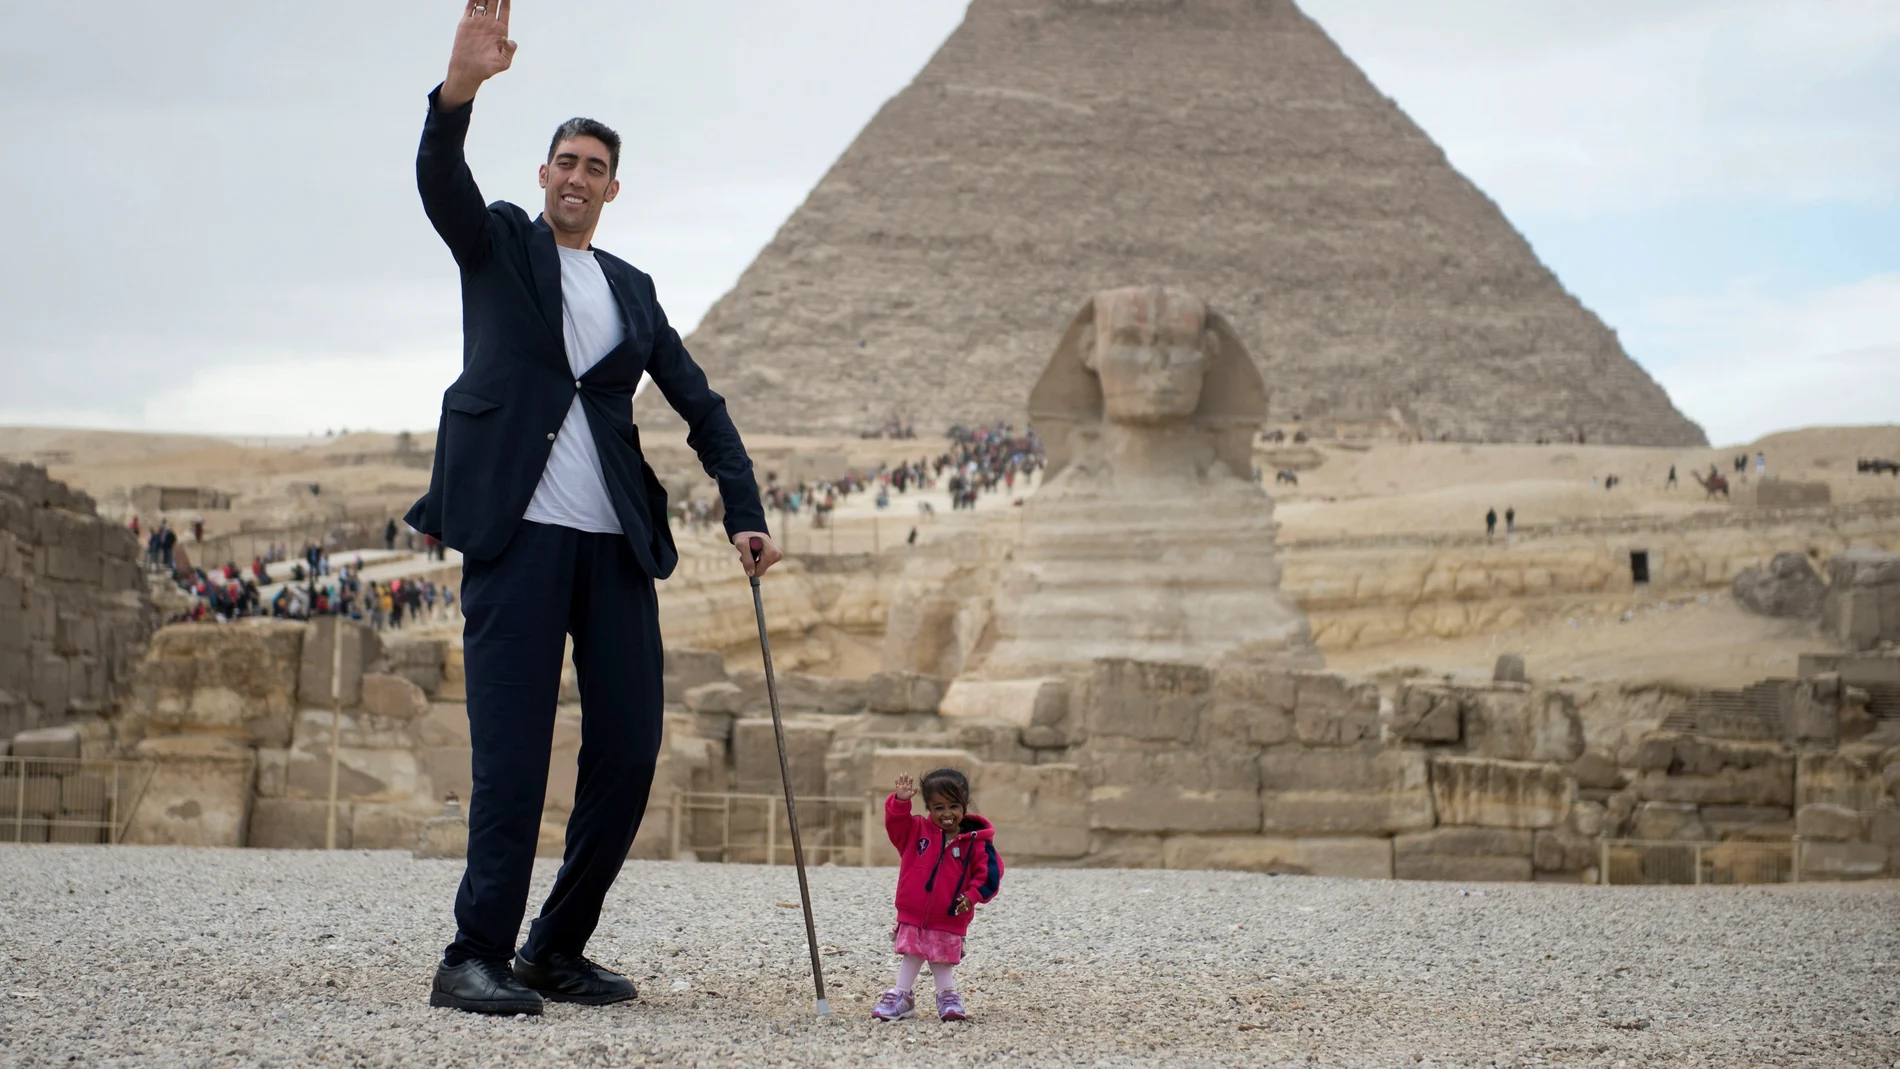 El hombre más alto del mundo y la mujer más pequeña del mundo visitan Egipto